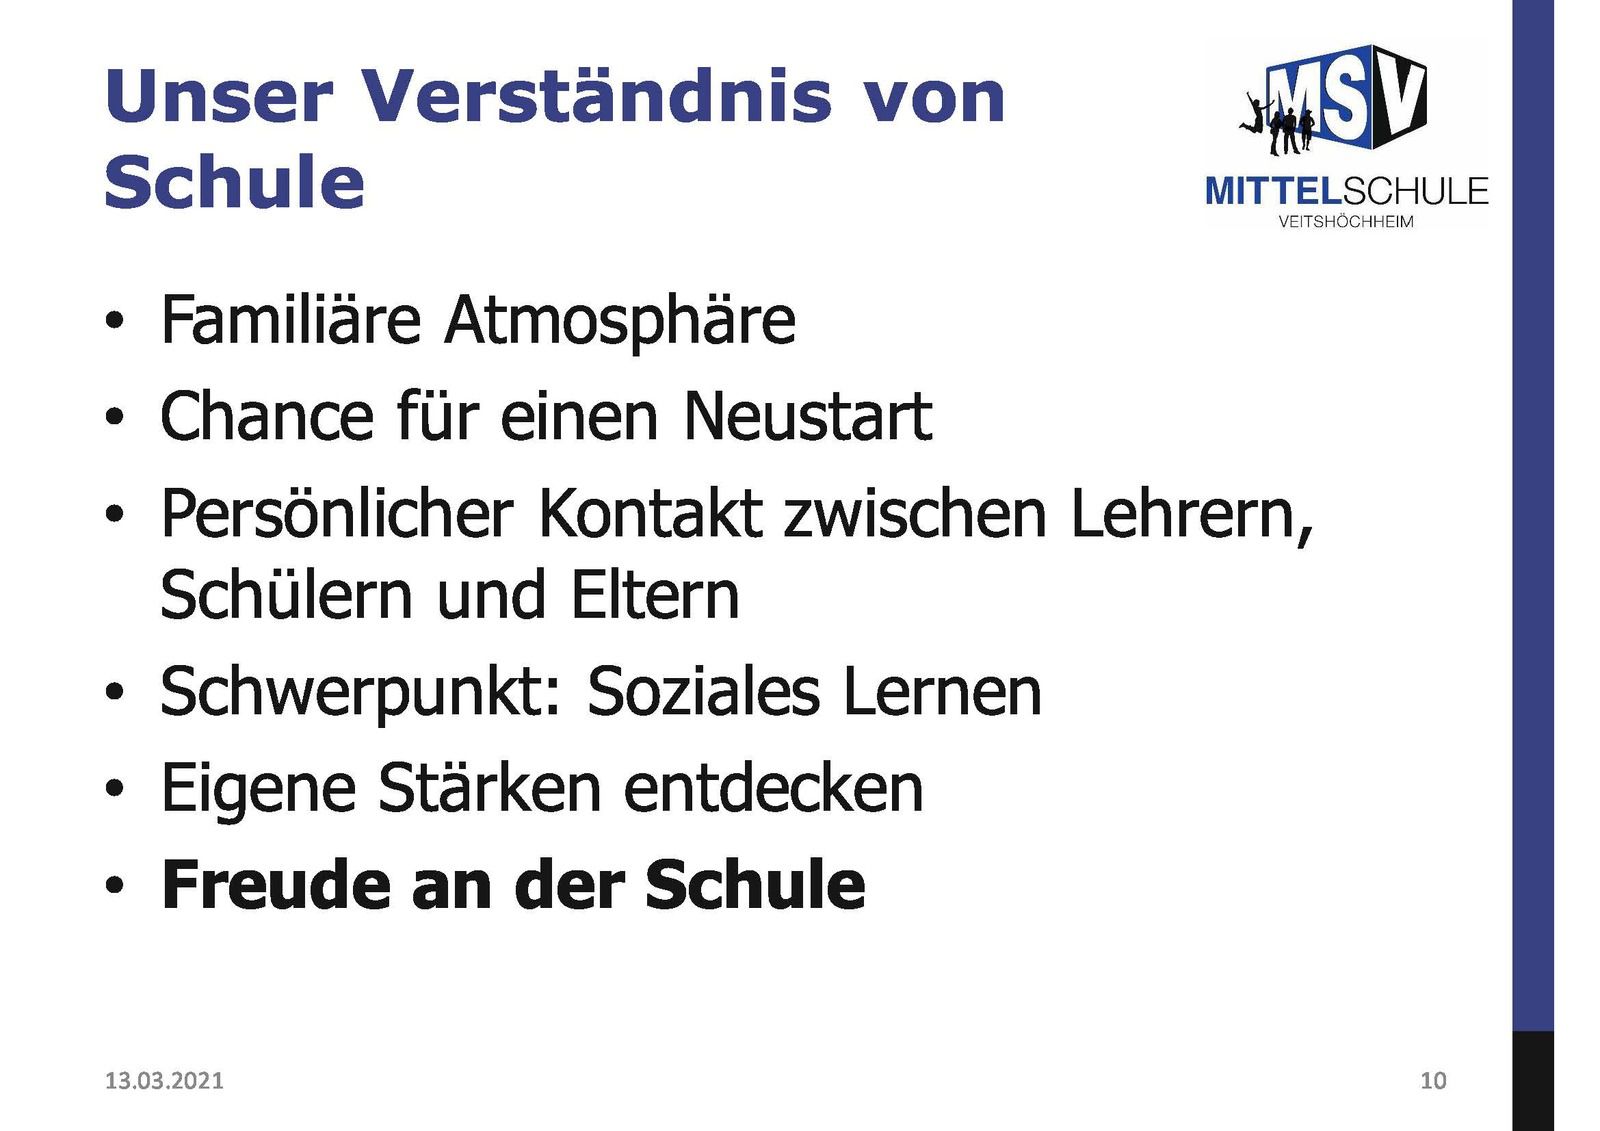 Infos über Mittelschule Veitshöchheim als weiterführende und berufsvorbereitende Schule